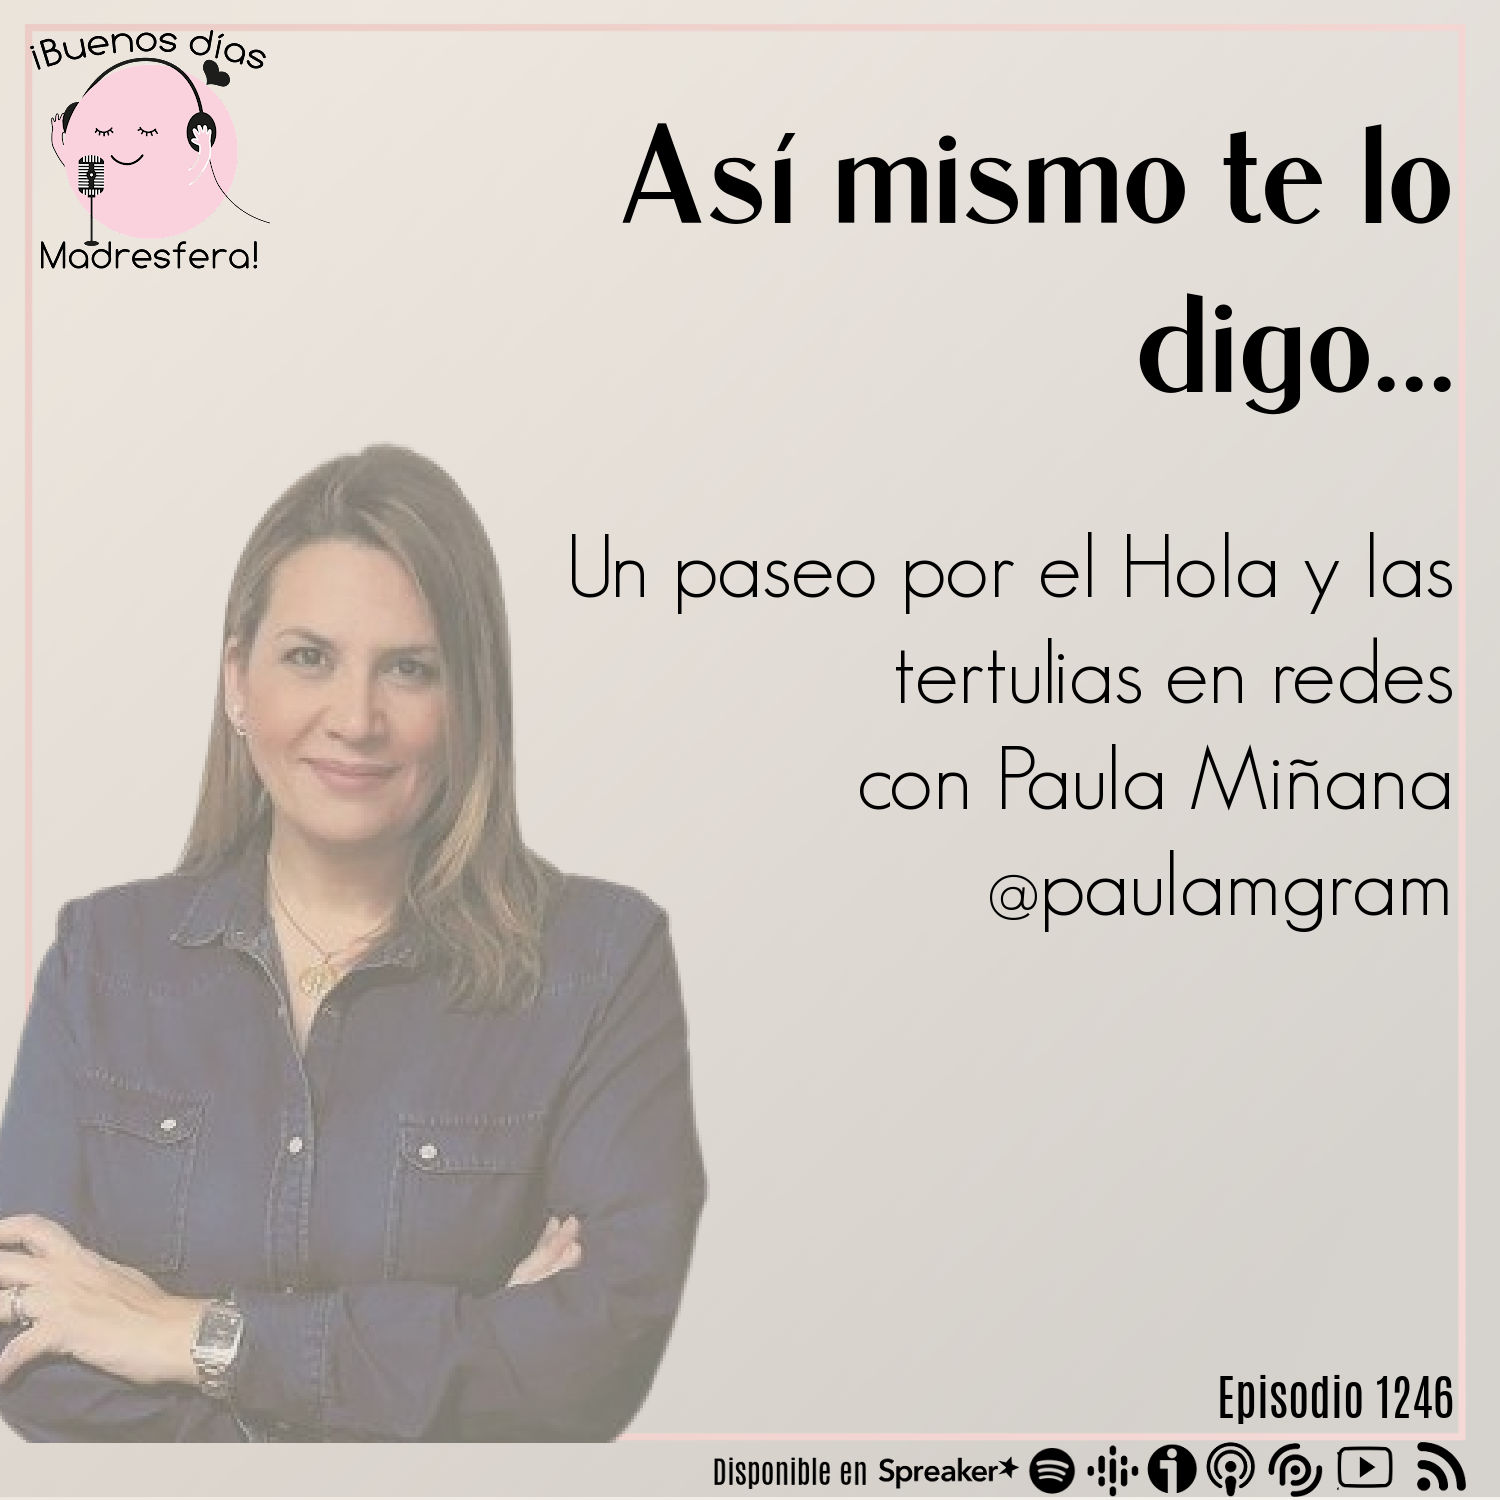 Así mismo te lo digo: Un paseo por el Hola y las tertulias en redes con Paula Miñana